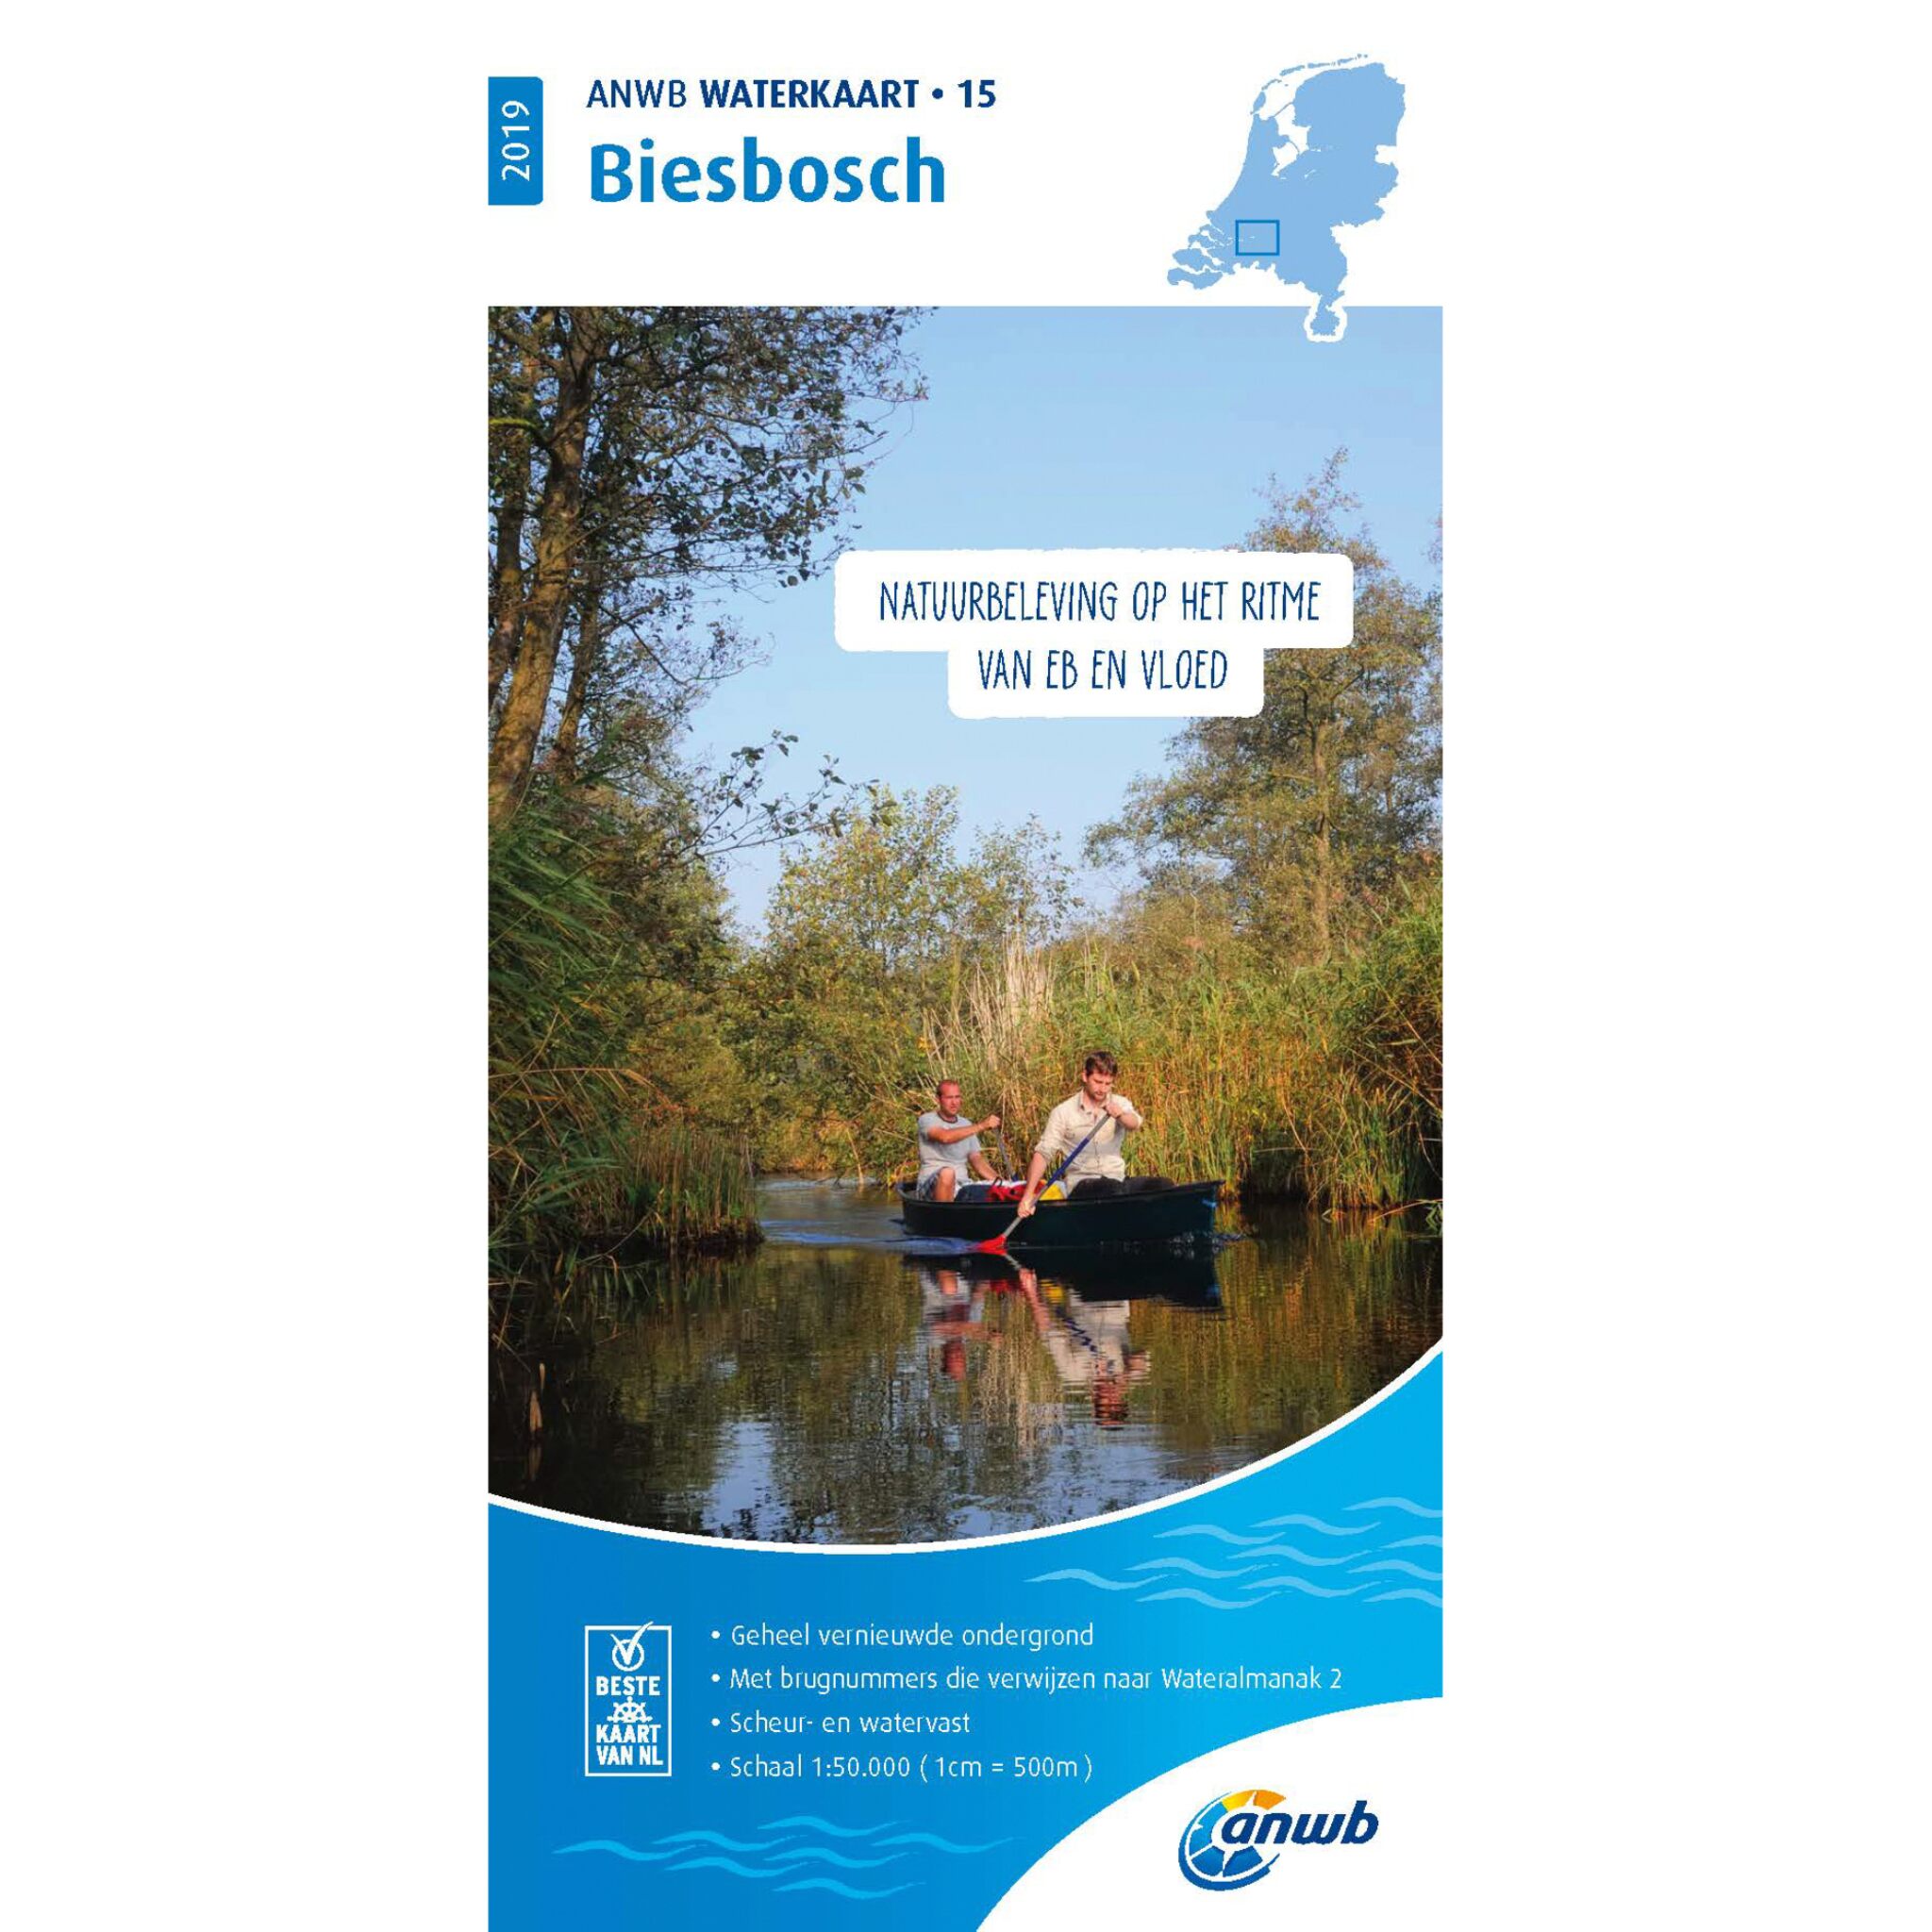 Waterkaart 15 Biesbosch 2019